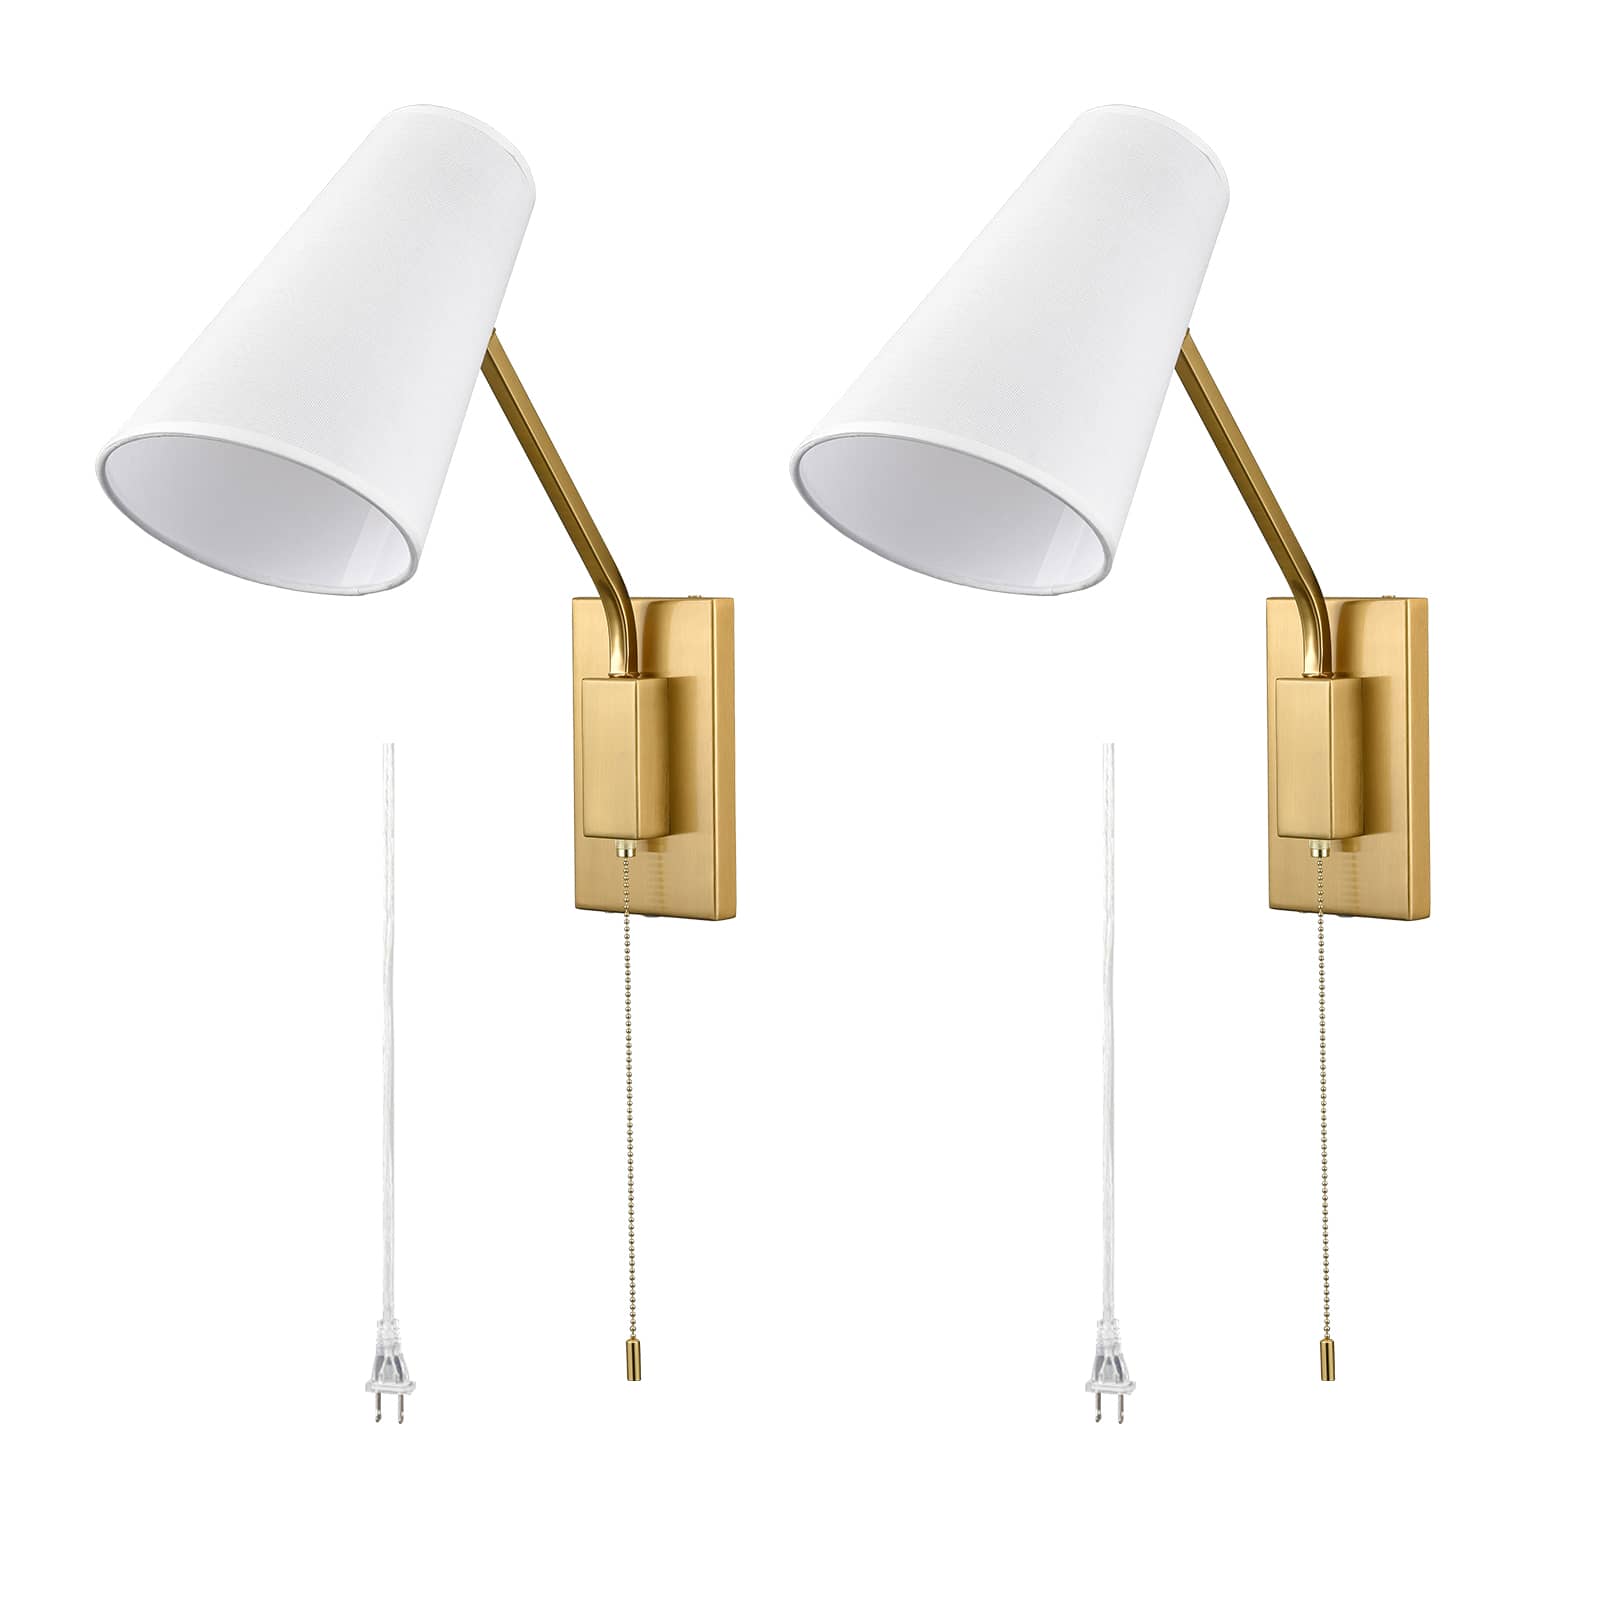 ボトムスス単品 Optimant Lighting Gold Wall Sconce, Modern Plug-in or Hardwired  Adjustable Swing Arm Wall Mounted Light, Pack